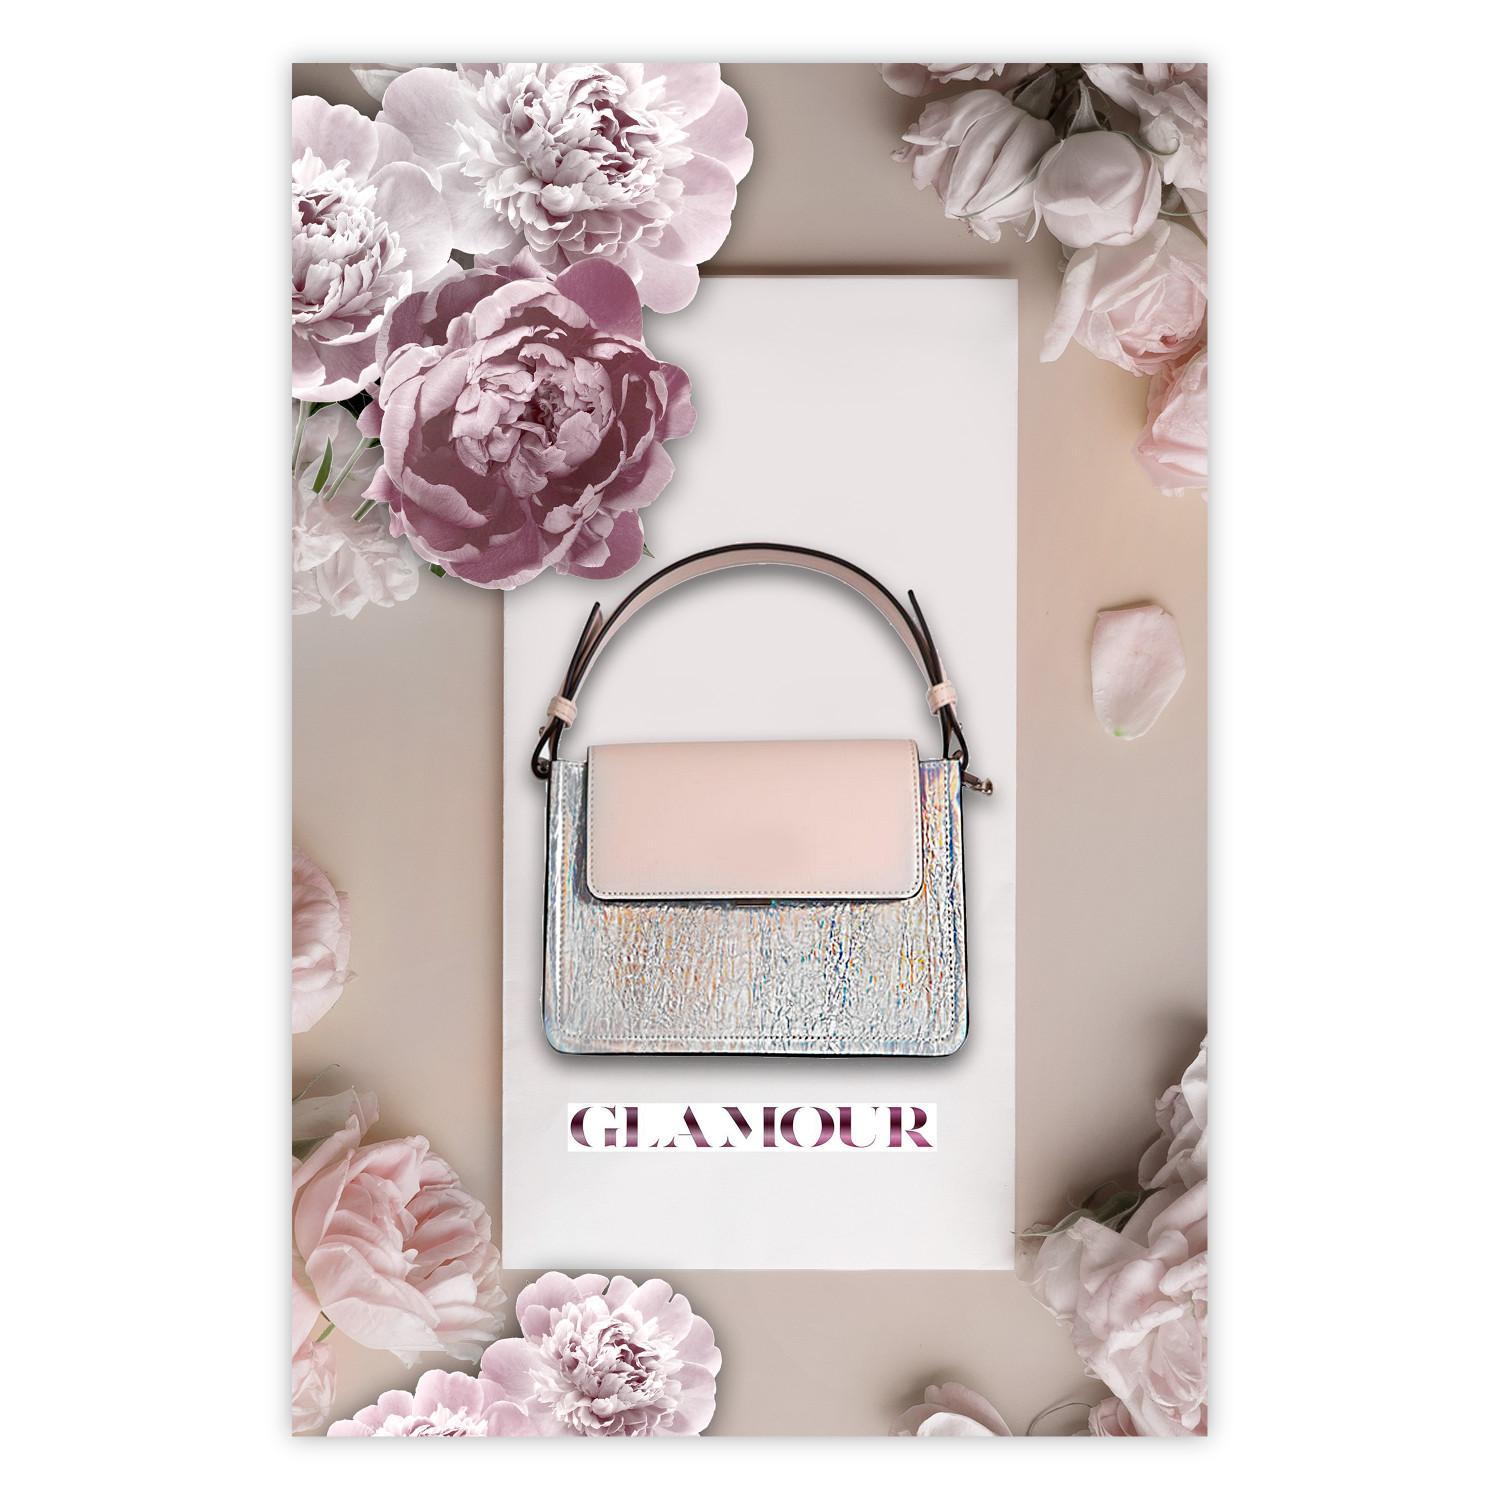 Poster Bolso elegante - bolso femenino sobre fondo claro rodeado de flores